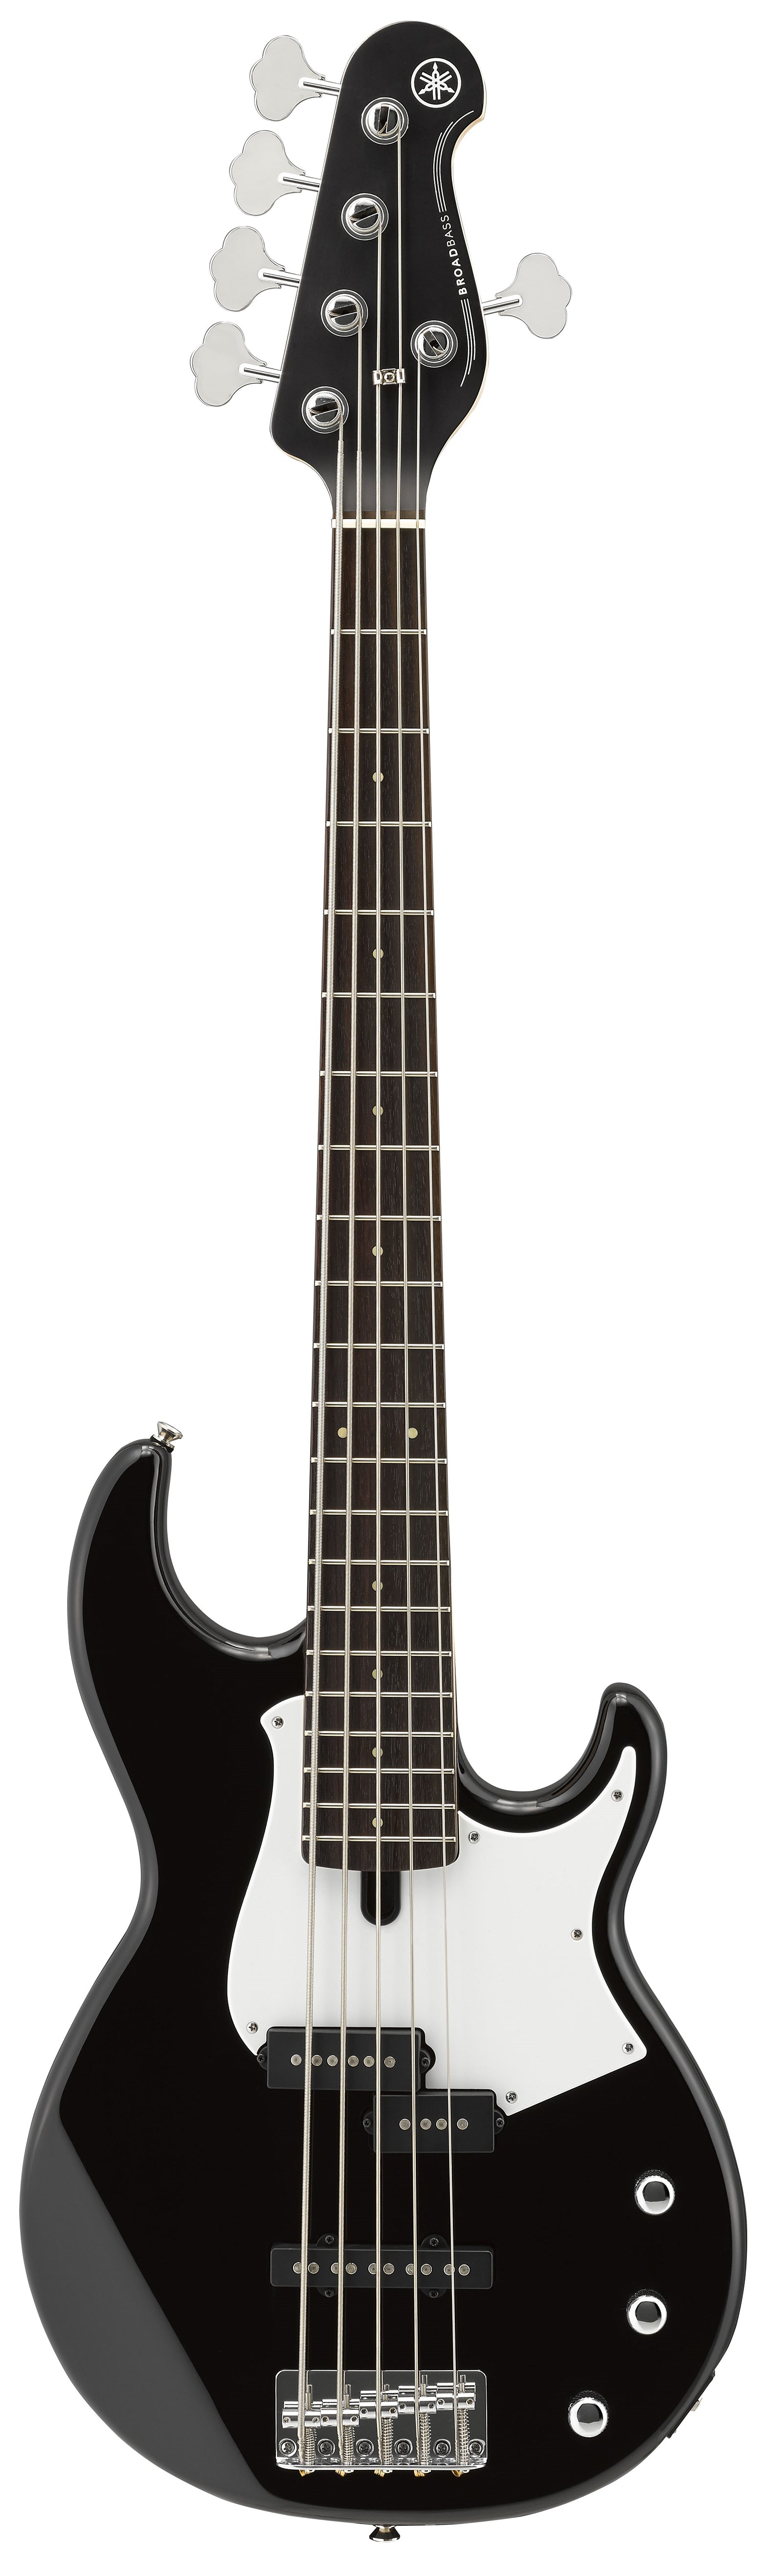 Yamaha Bb235 5-String Electric Bass Guitar